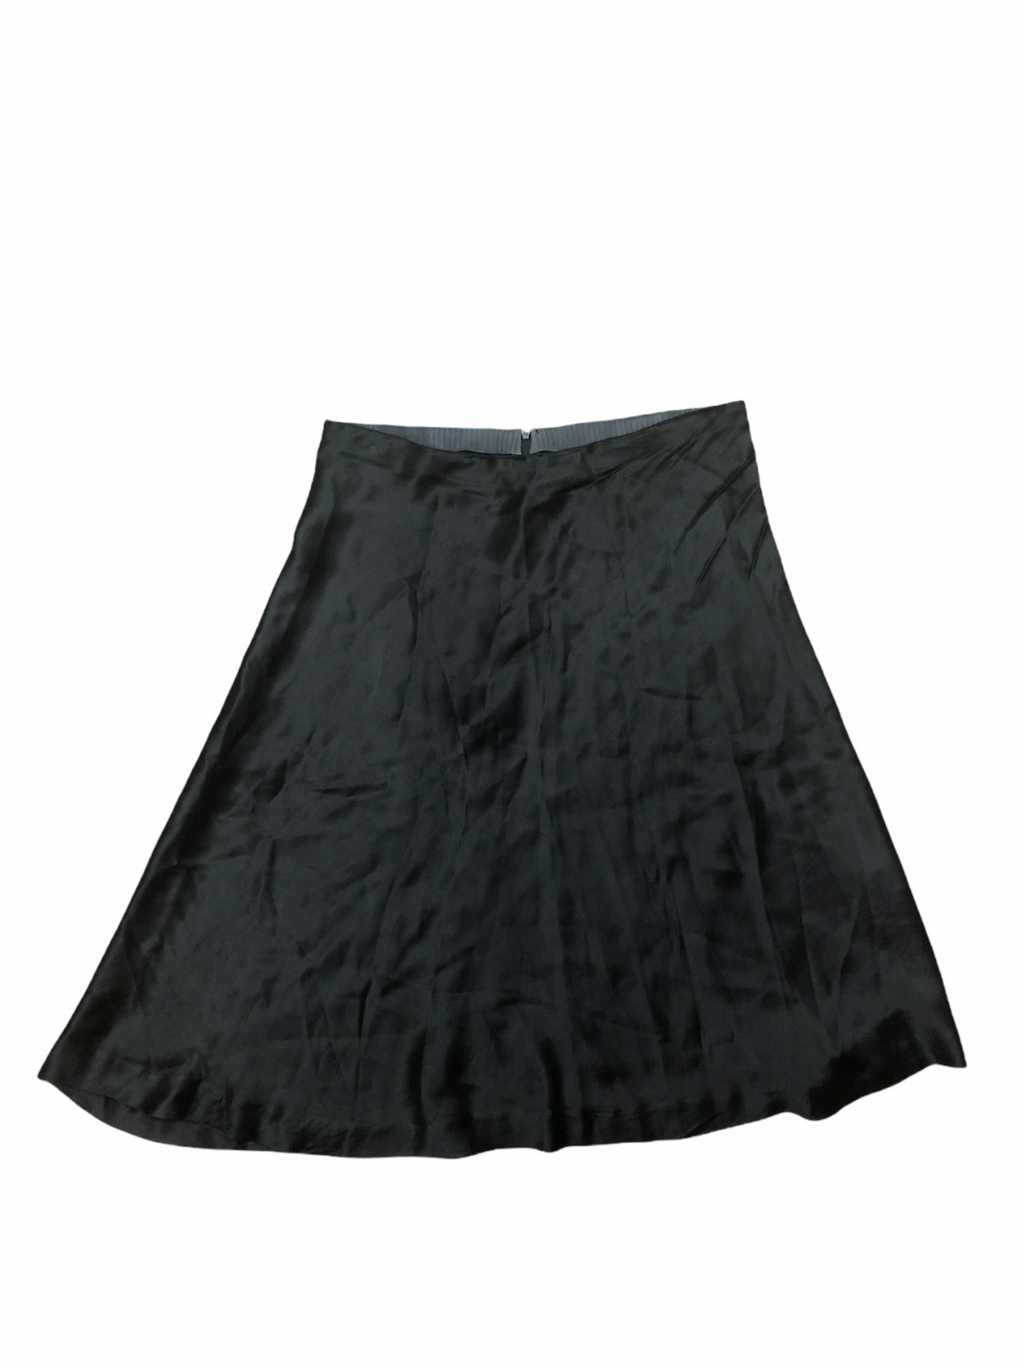 Archive 1990s Black Skirt